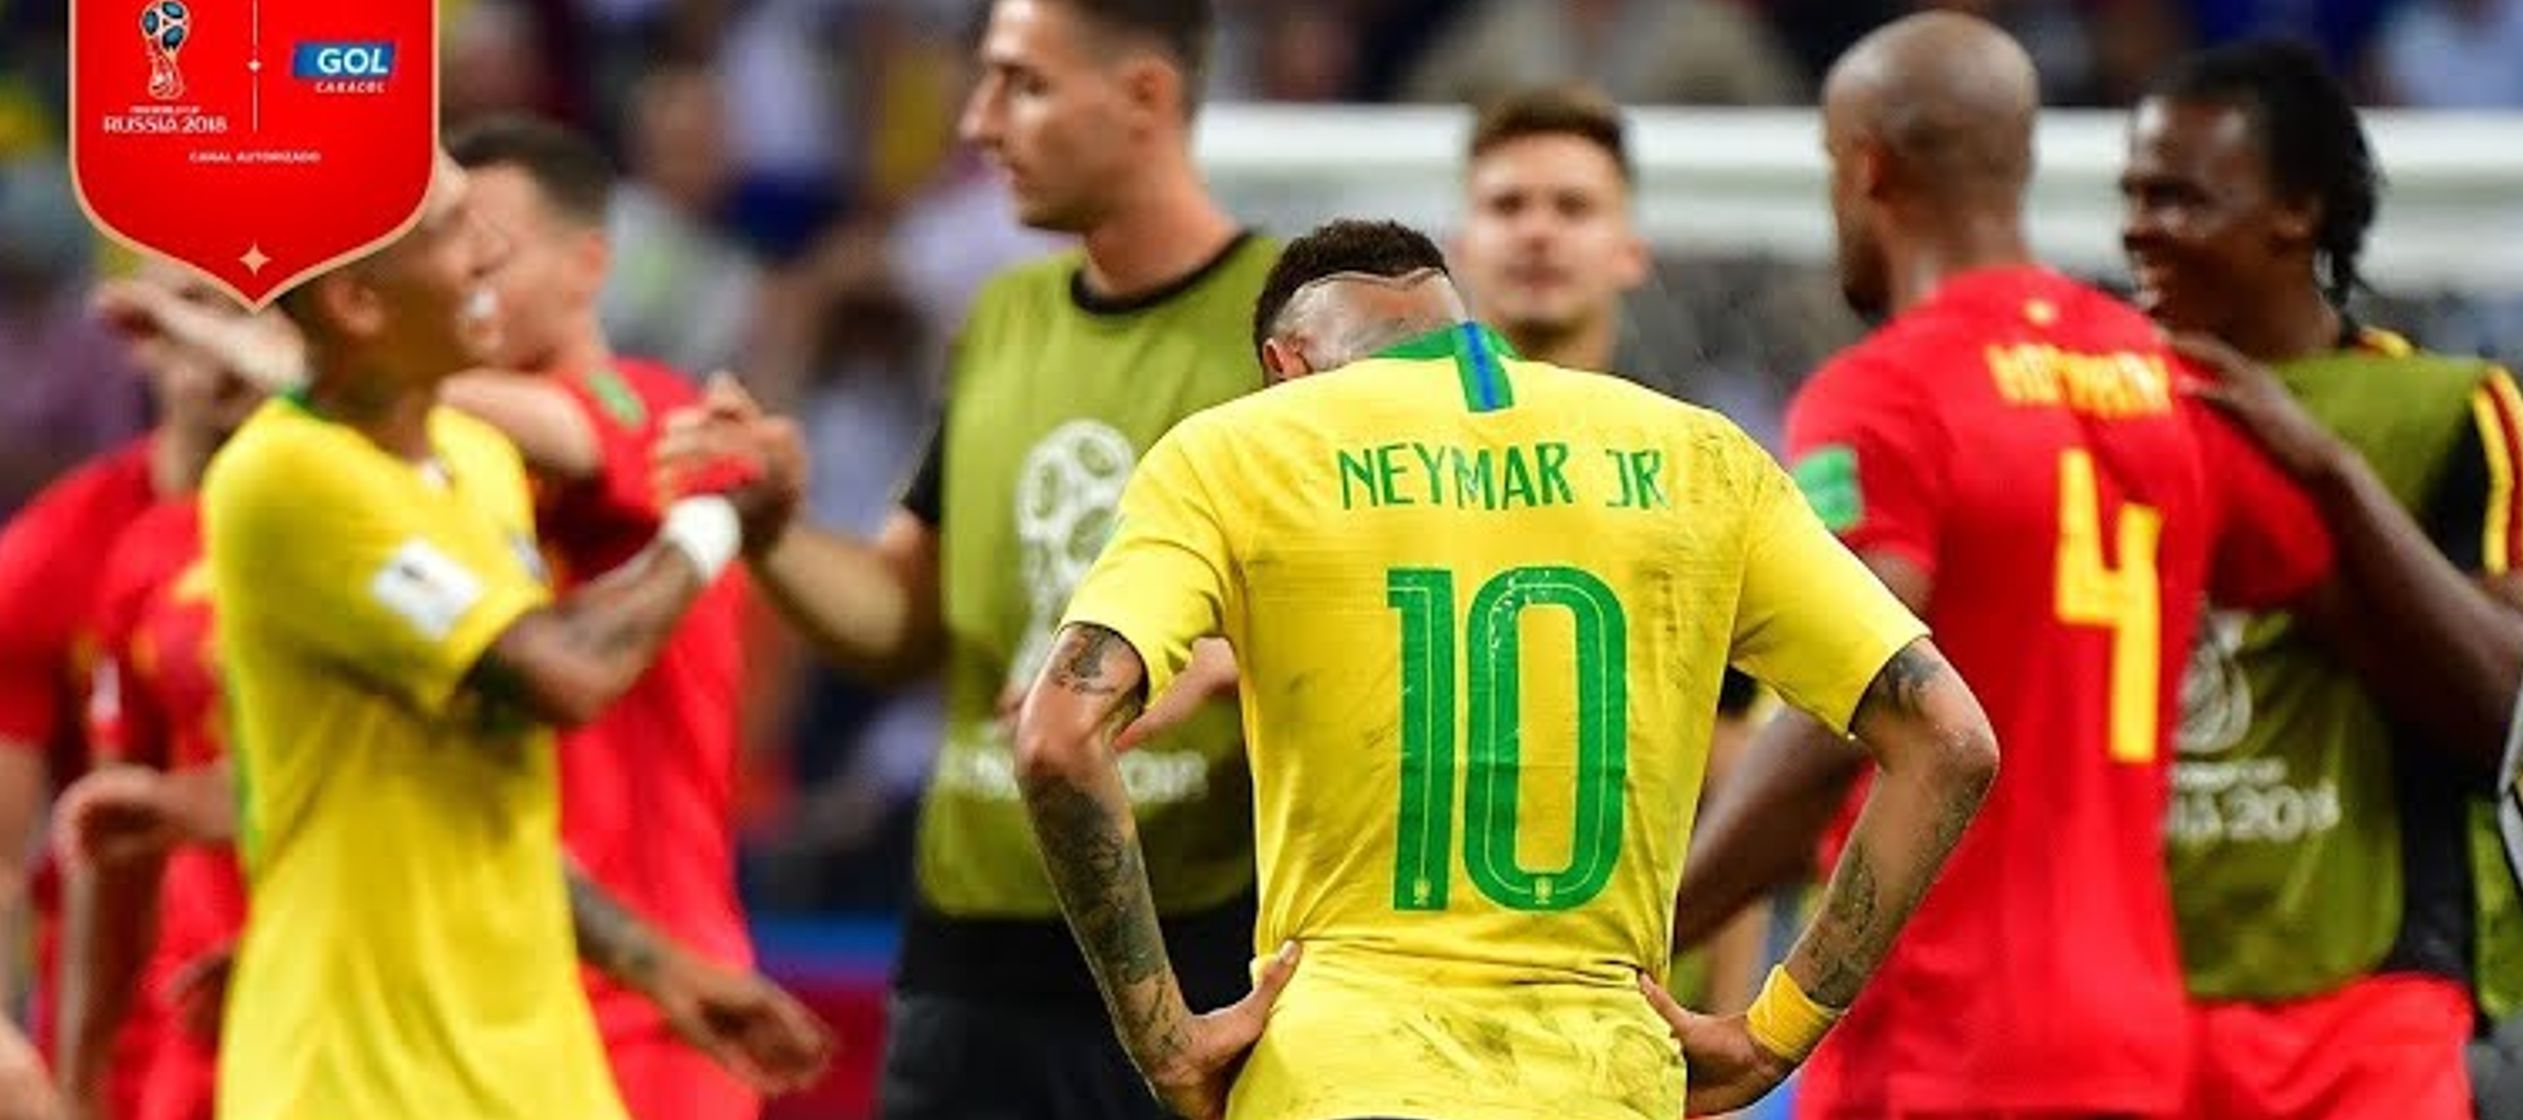 Seis días después el que dijo adiós fue Neymar, aunque una ronda más...